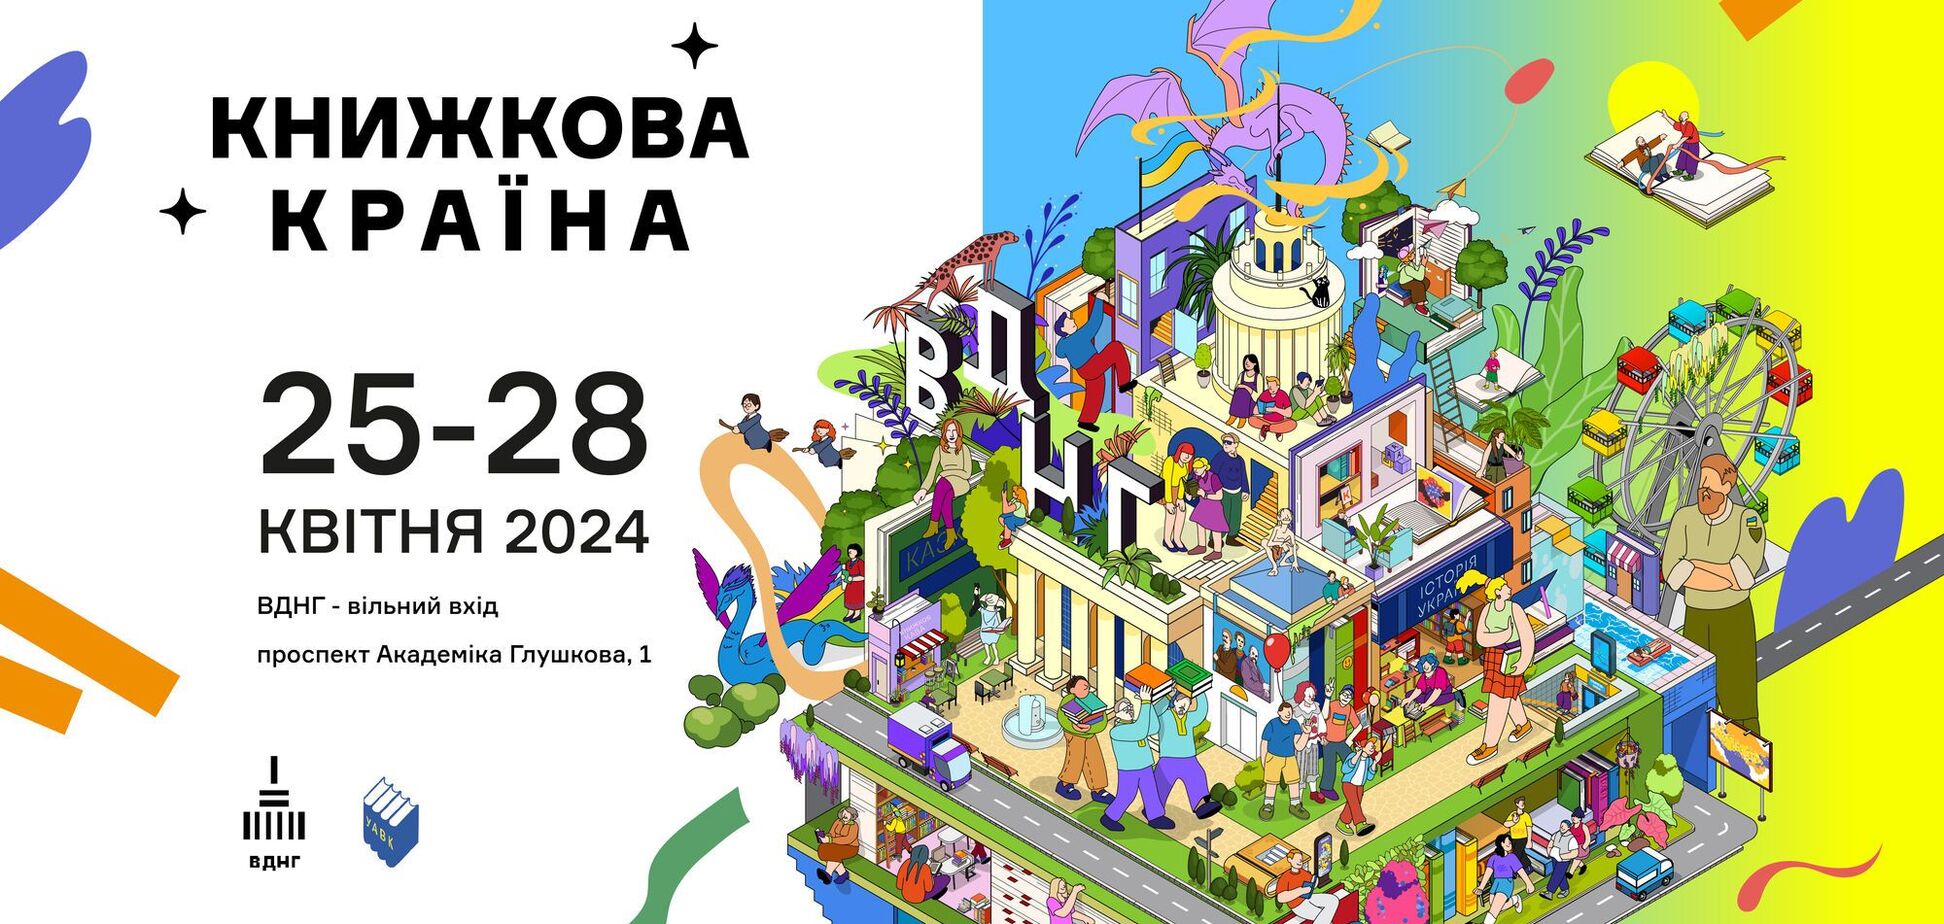 Ярмарка, ивенты и игры: в Киеве на ВДНХ состоится фестиваль 'Книжная страна'